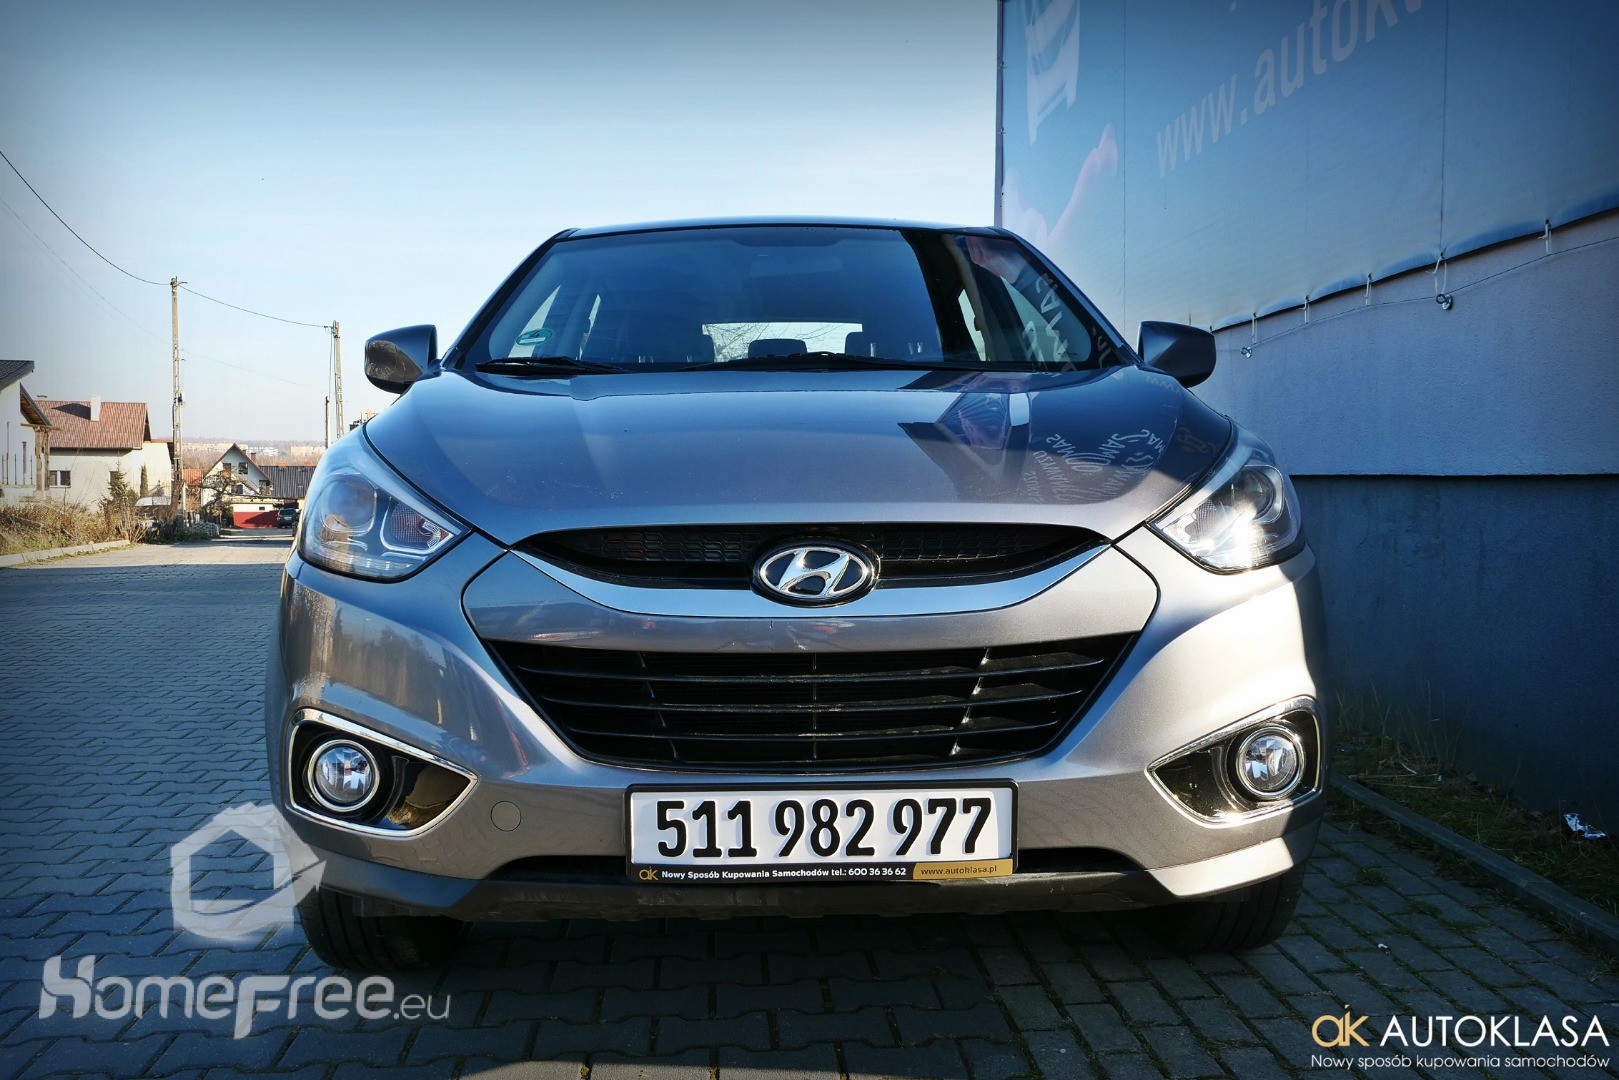 Hyundai Ix35 2014 rok, 86000 km przebiegu, 1,6 benzyna